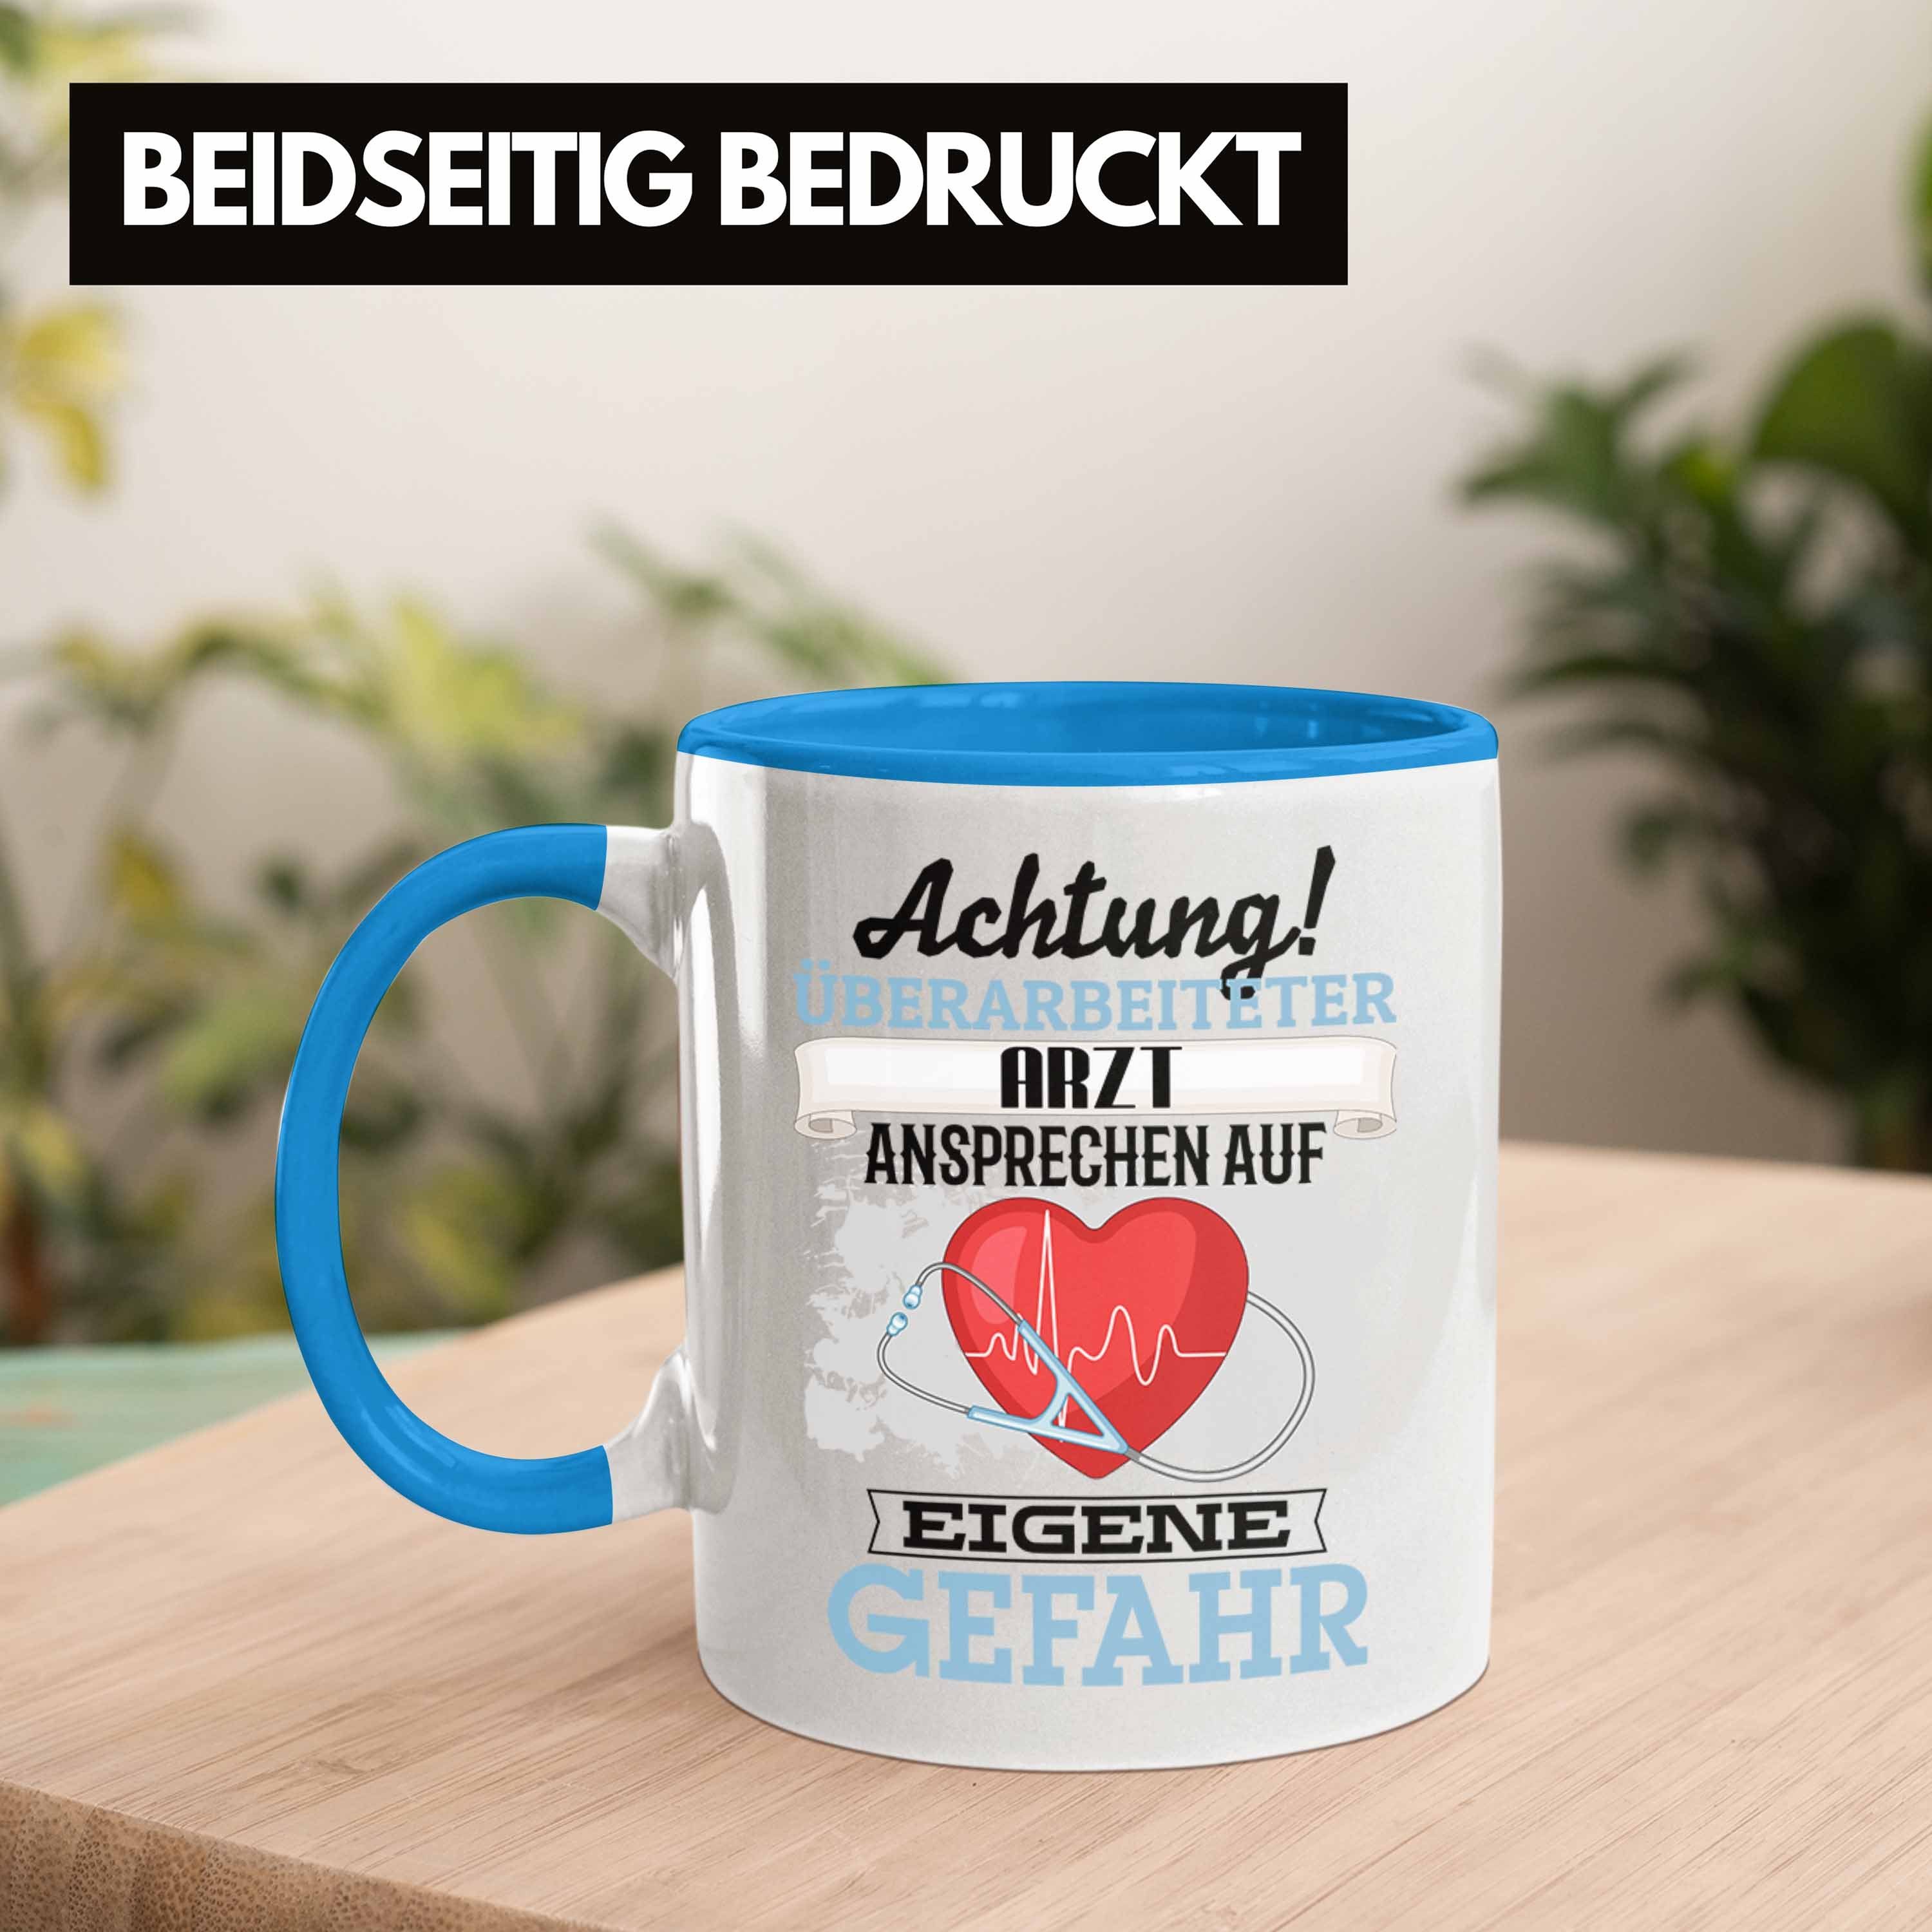 Trendation Tasse Arzt Tasse Spruch Geschenkidee für Kaffeebecher Arzt Lustiger Geschenk Blau